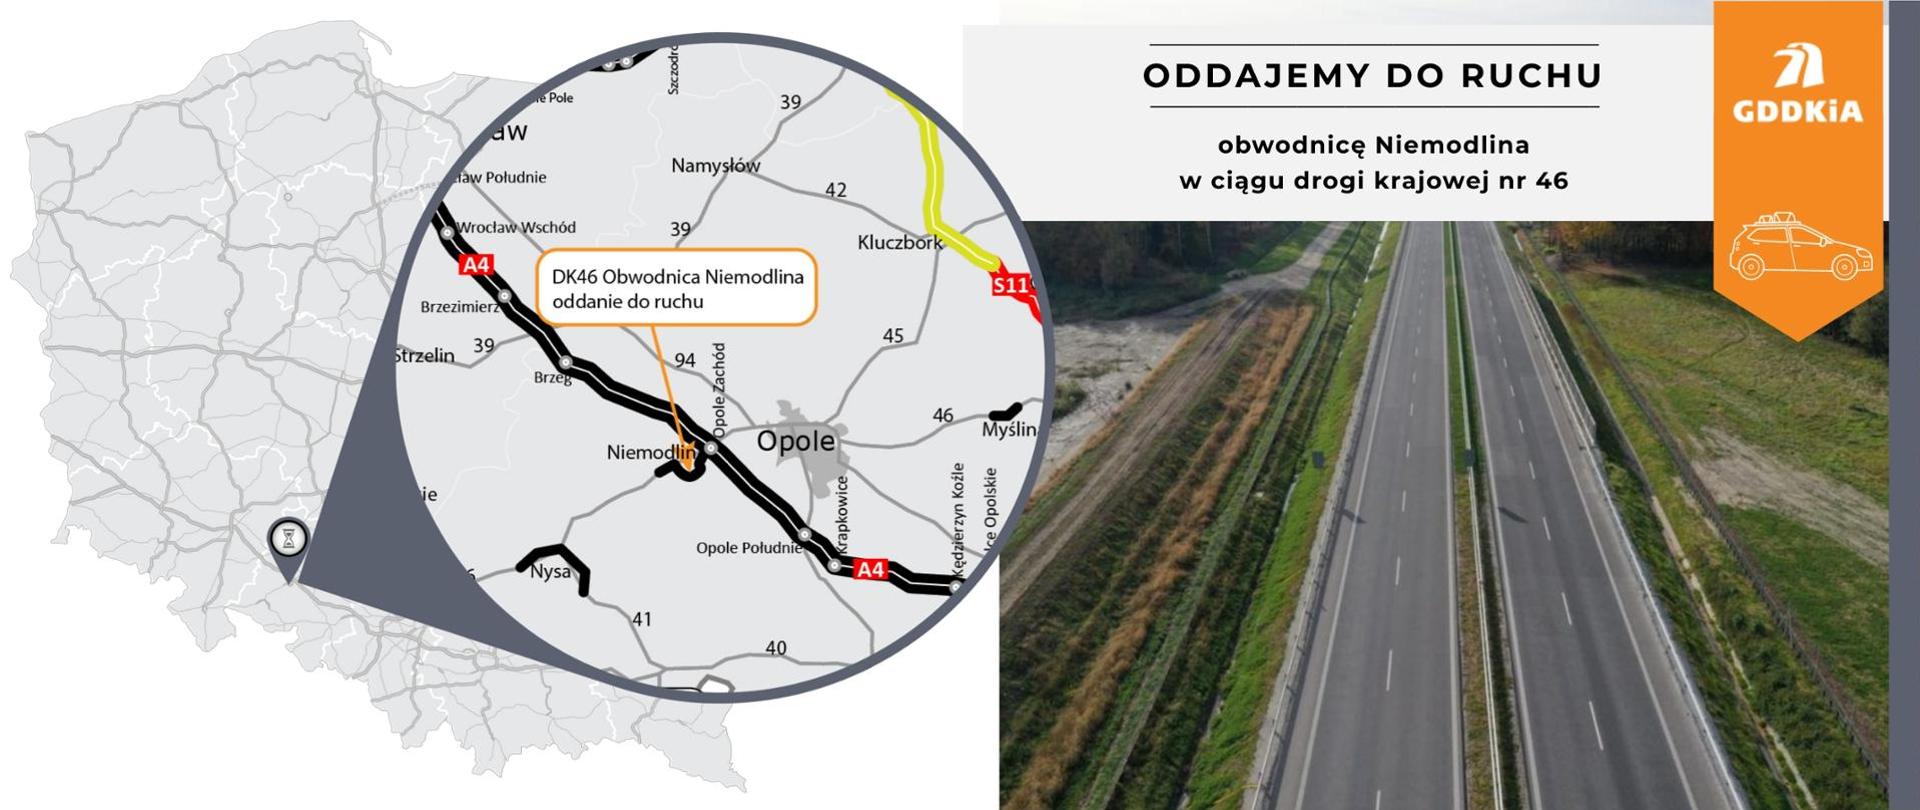 Infografika na oddanie do ruchu obwodnicy Niemodlina w ciągu DK46. Po lewej mapa Polski z lokalizacją odcinka, po prawej zdjęcie z lotu ptaka dwujezdniowej drogi z dwoma pasami ruchu w obu kierunkach. 